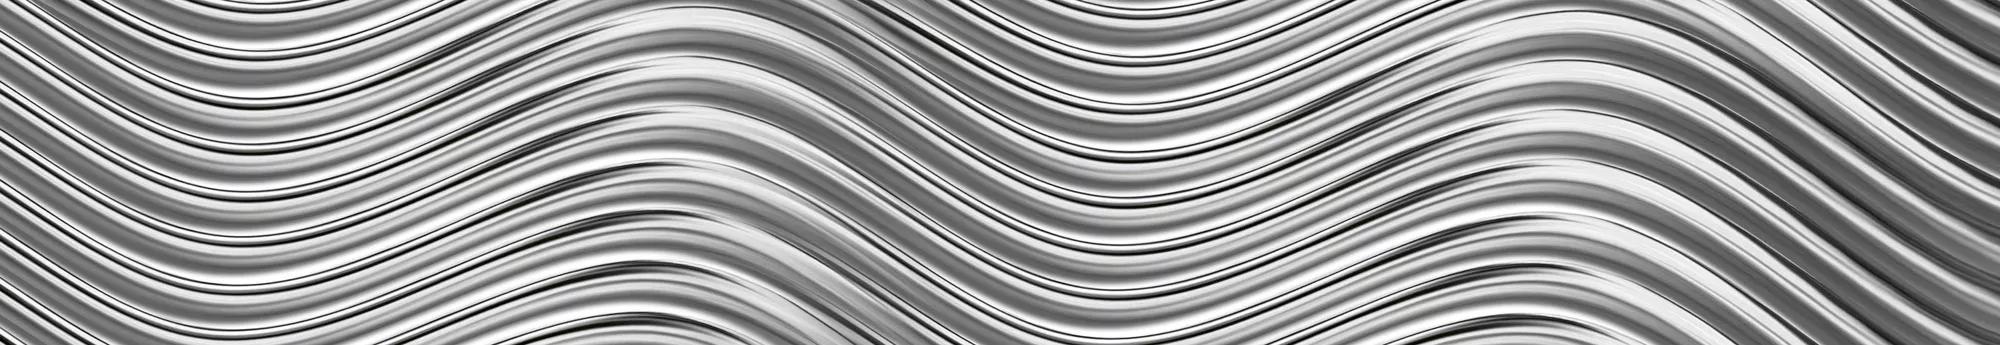 Konyhai öntapadós hátfal modern ezüst hullám mintával